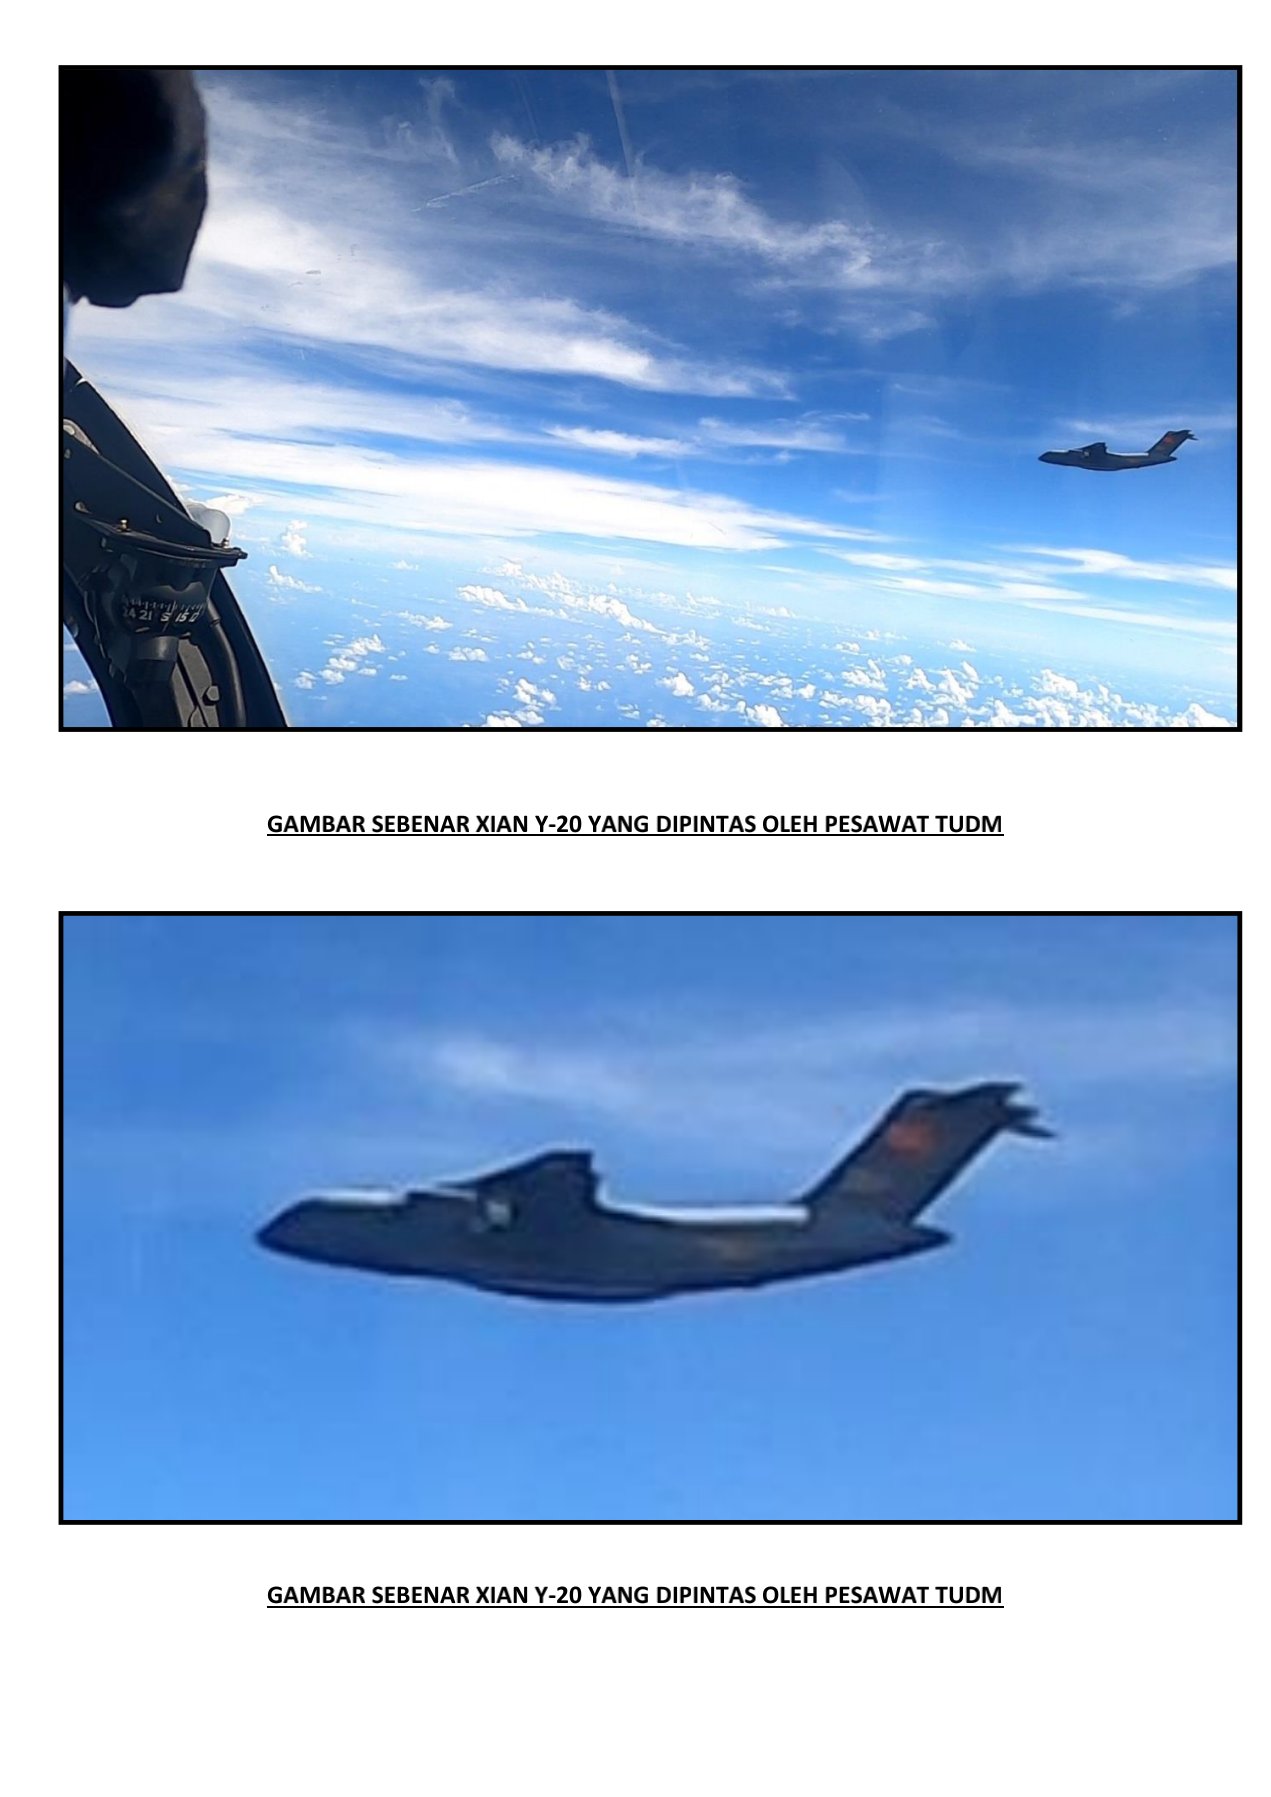 Malezya Hava Kuvvetleri/Çin Uçakları